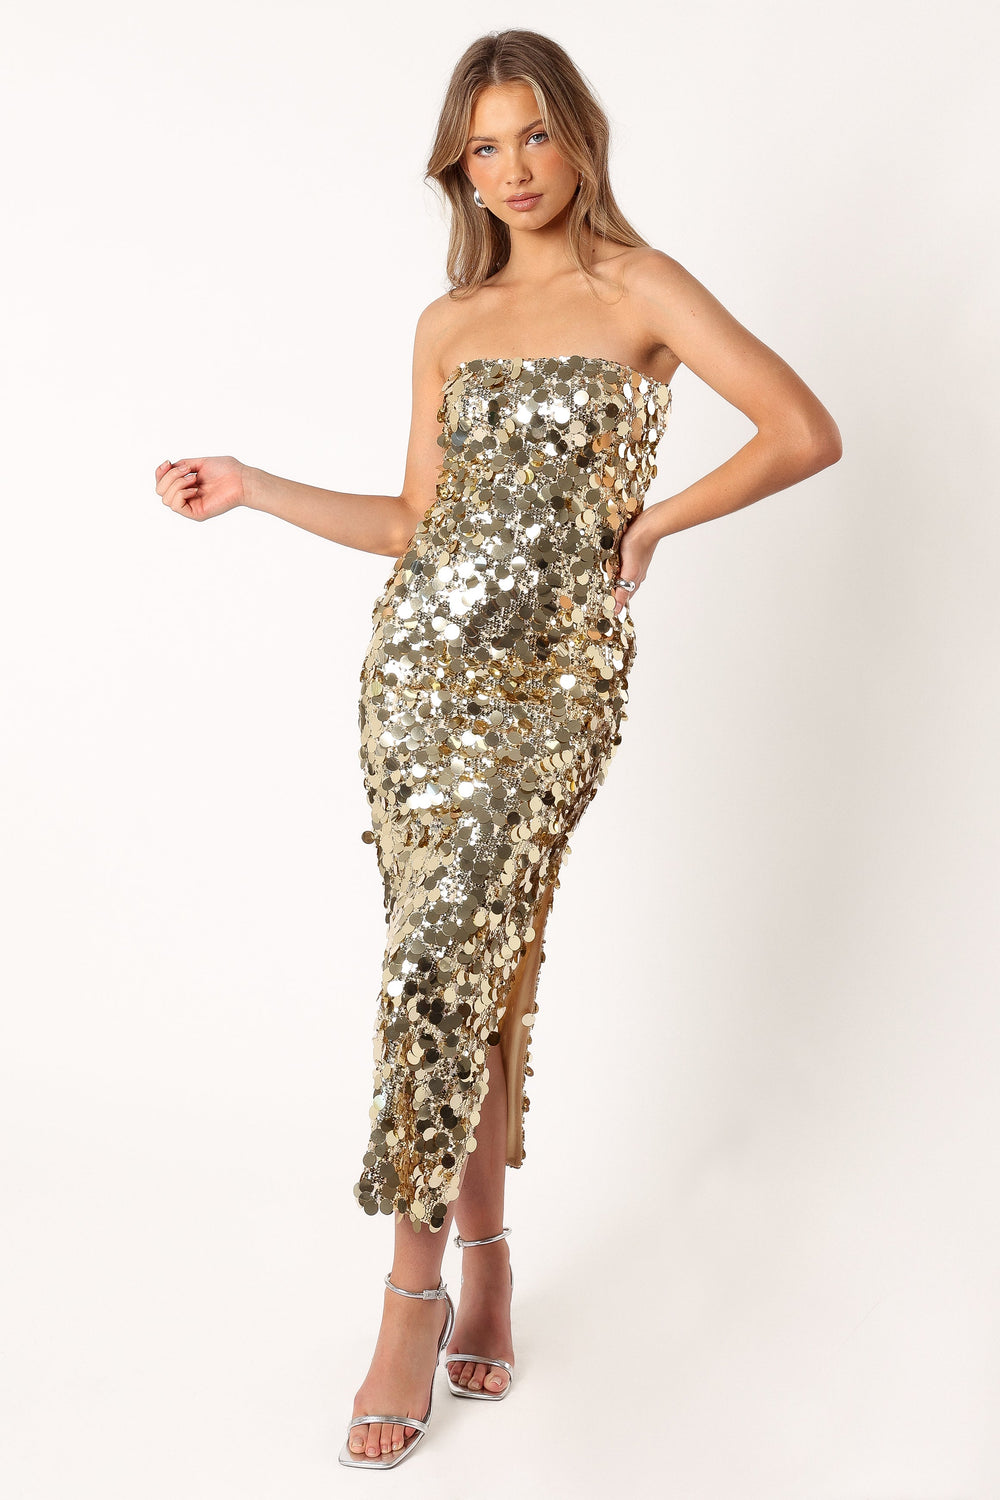 Ciara Maxi Dress - Gold Sequin – Thats So Fetch AU